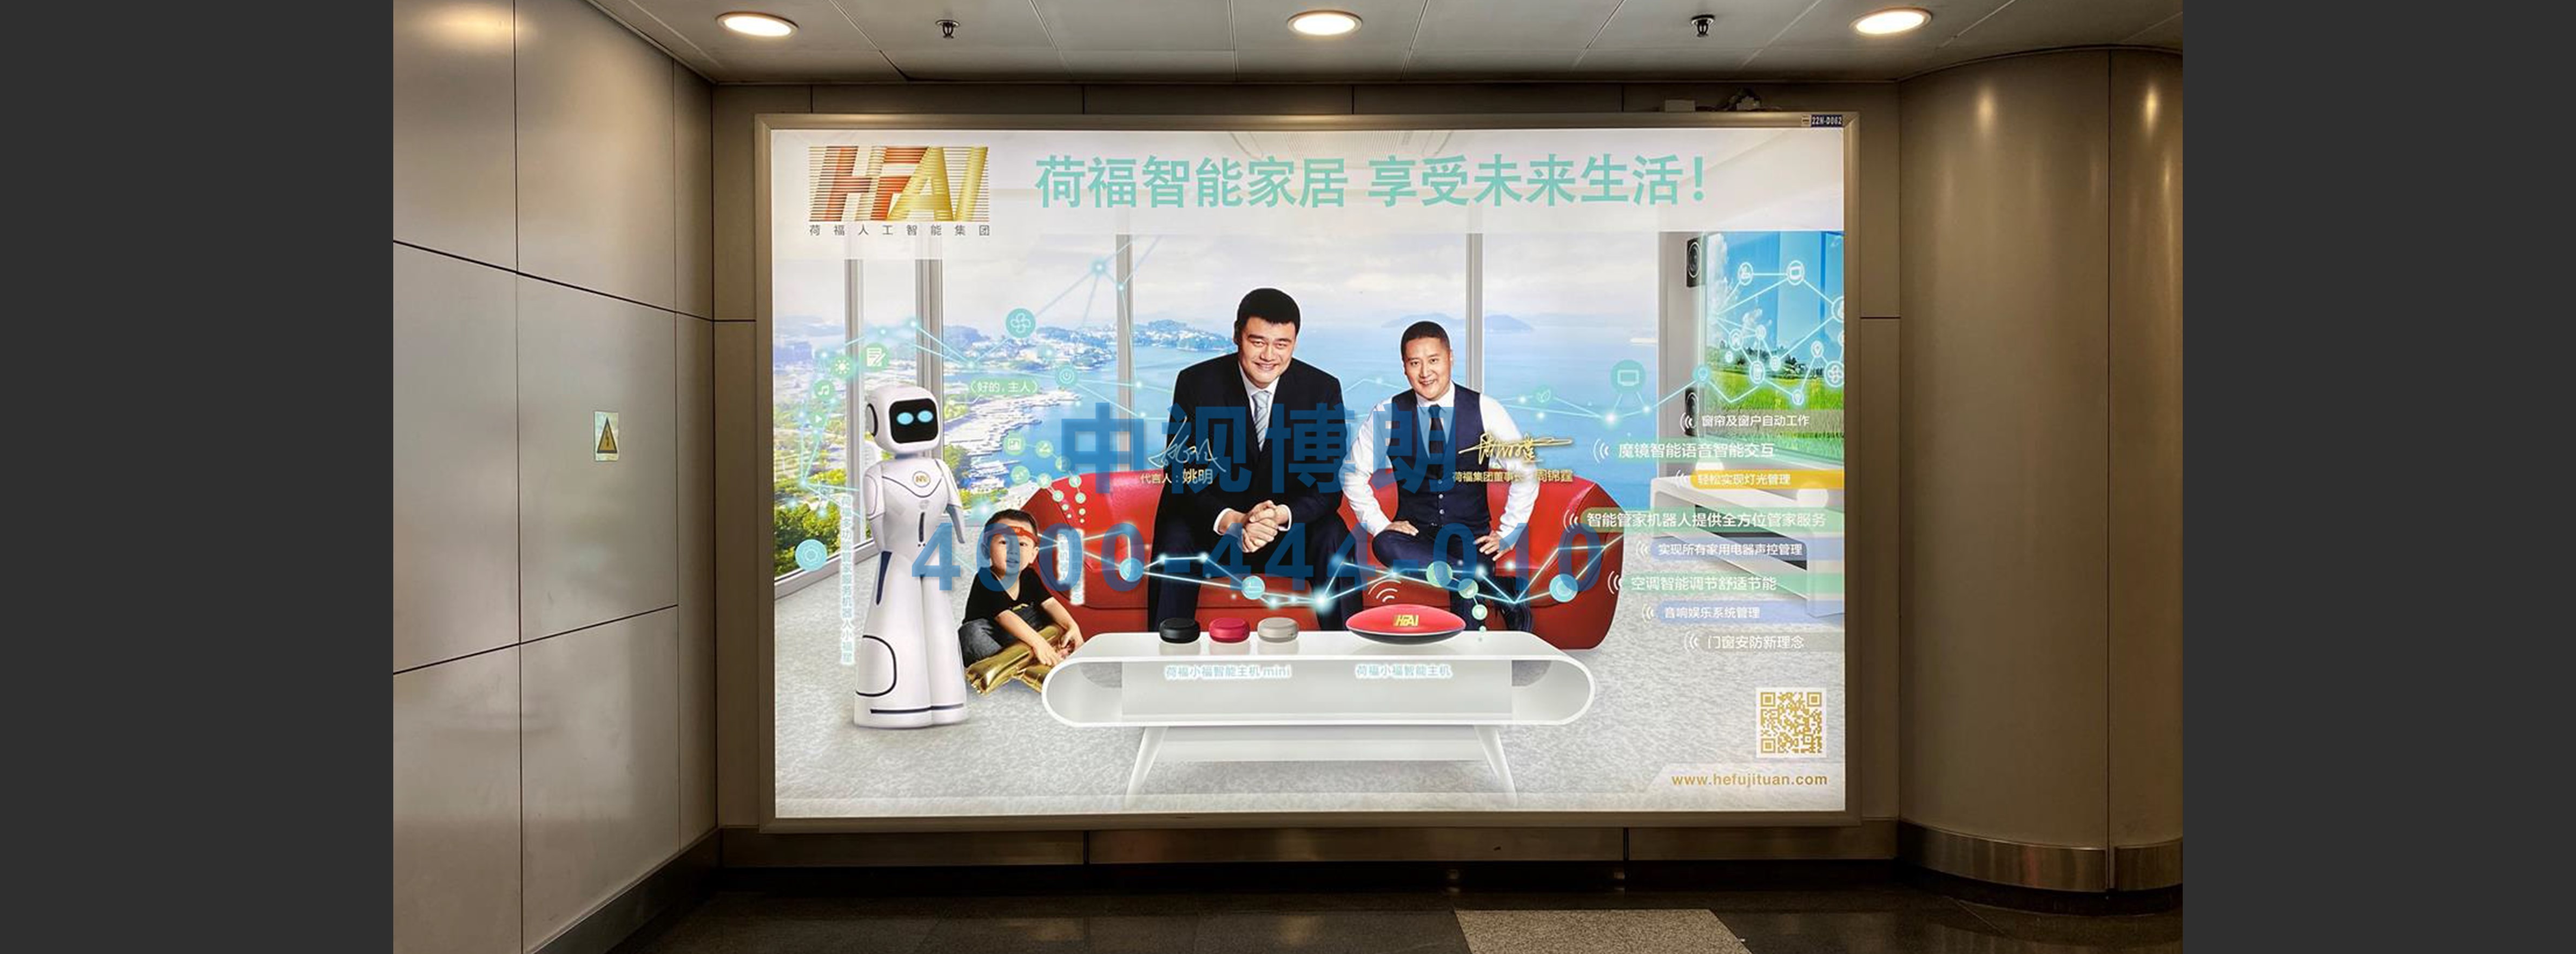 北京首都机场广告-T2国内出发大厅灯箱D062